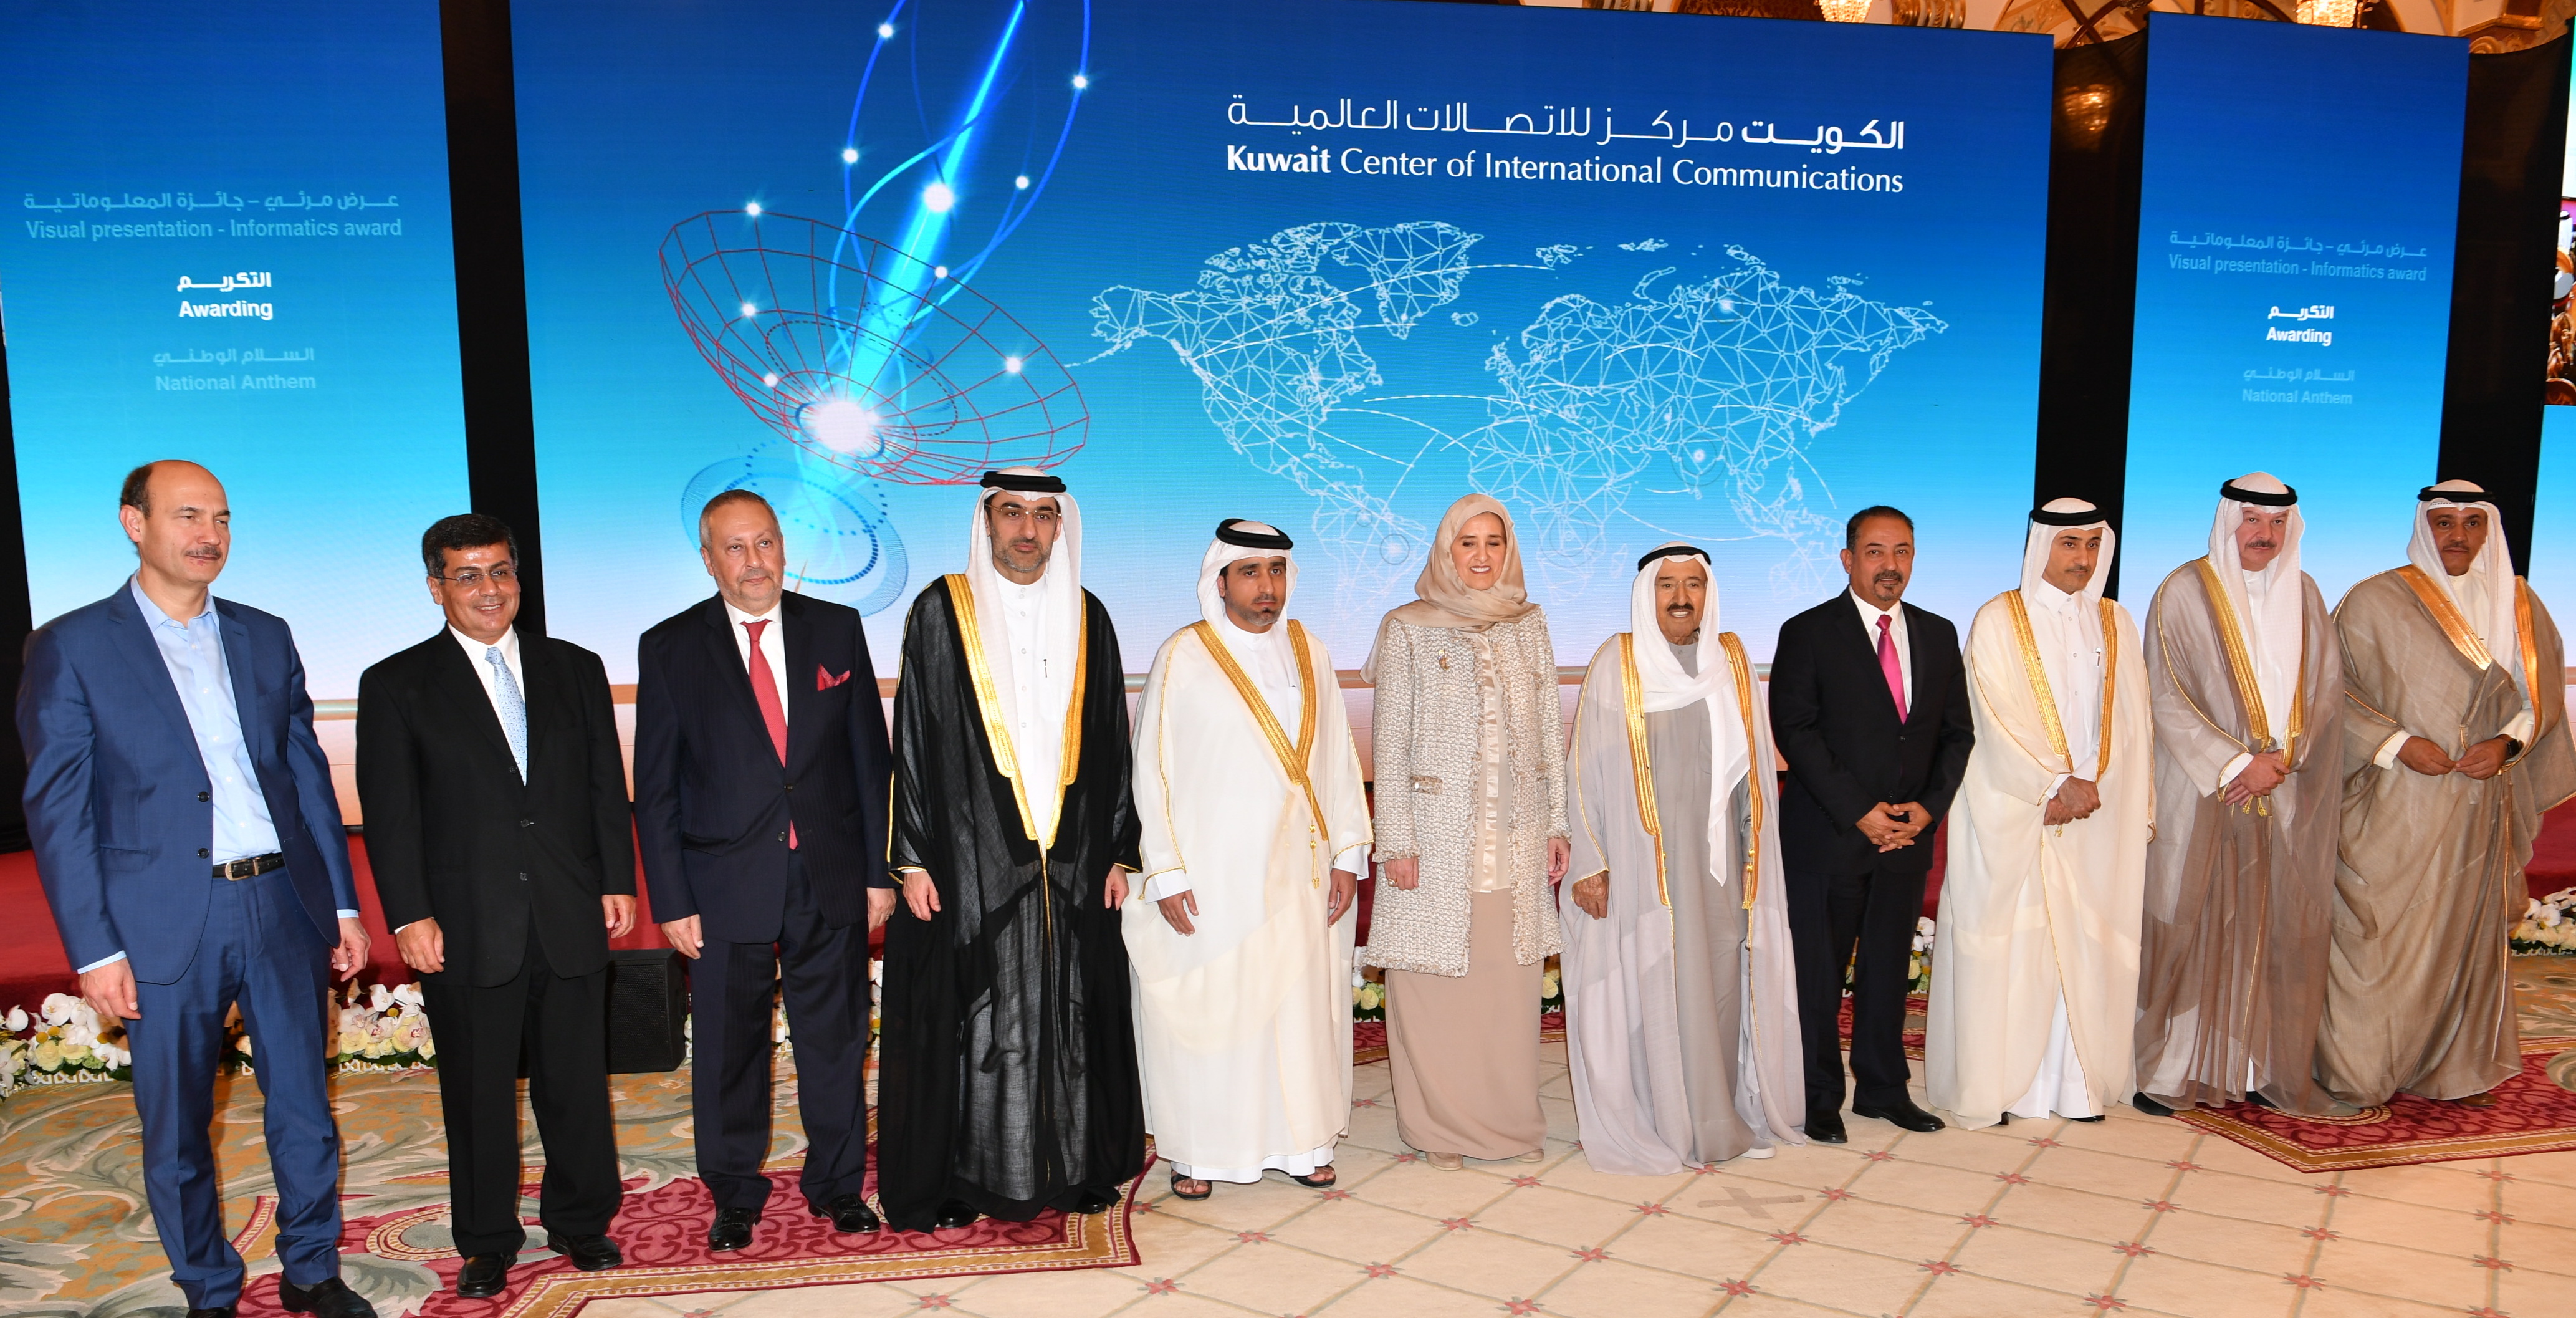 His Highness the Amir Sheikh Sabah Al-Ahmad Al-Jaber Al-Sabah attended the 18th edition of His Highness Sheikh Salem Al-Ali Al-Sabah's Informatics Award